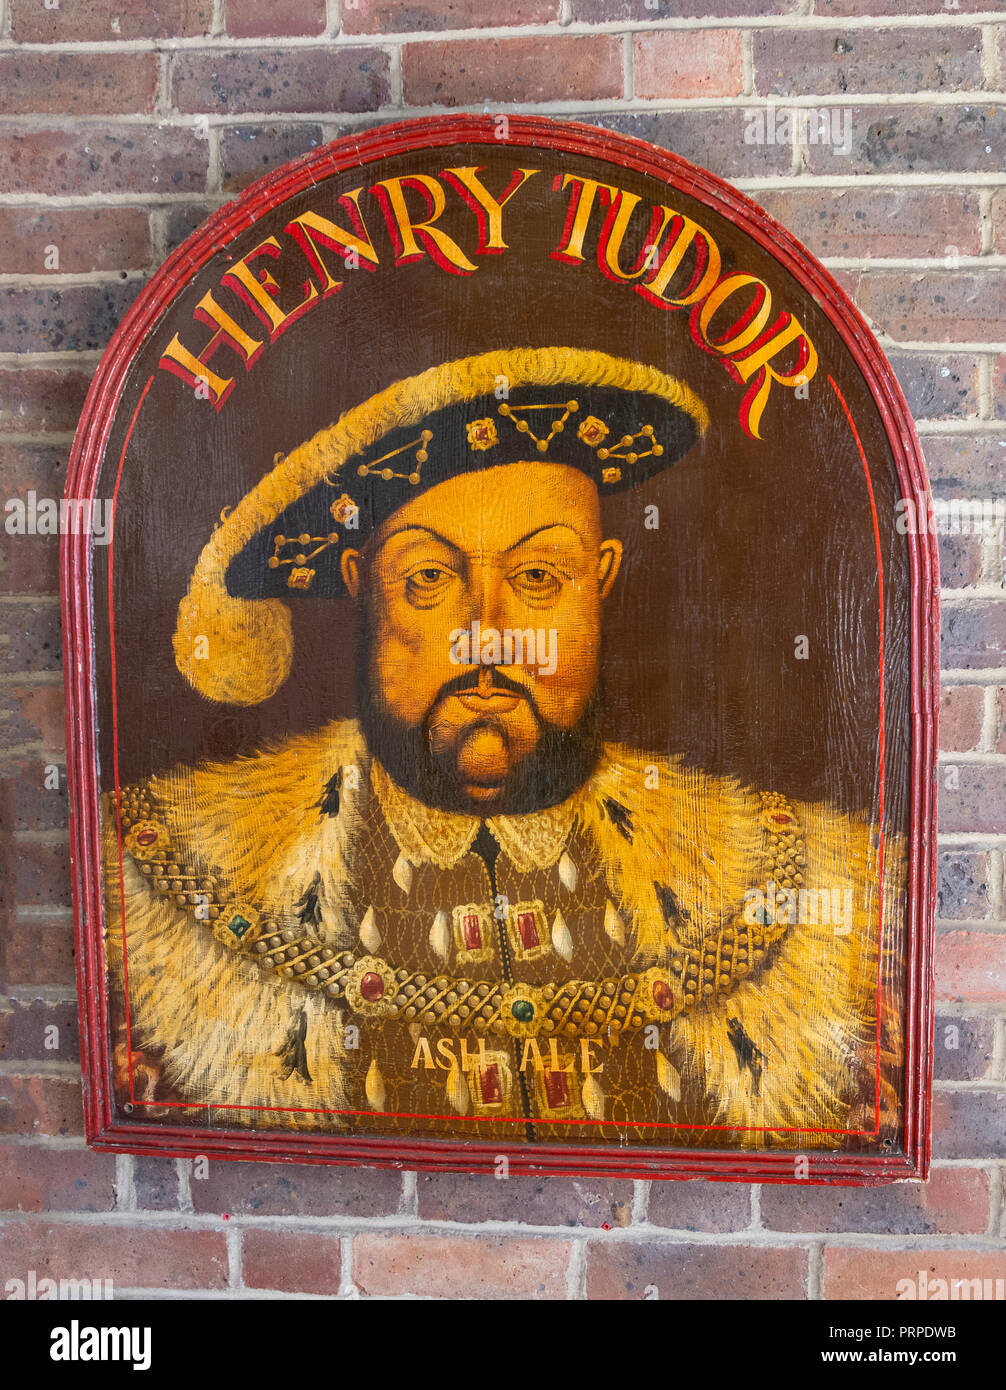 Henry Tutor pub segno presso il Museo di Midhurst, Knockhundred Mews, Midhurst, West Sussex, in Inghilterra, Regno Unito Foto Stock